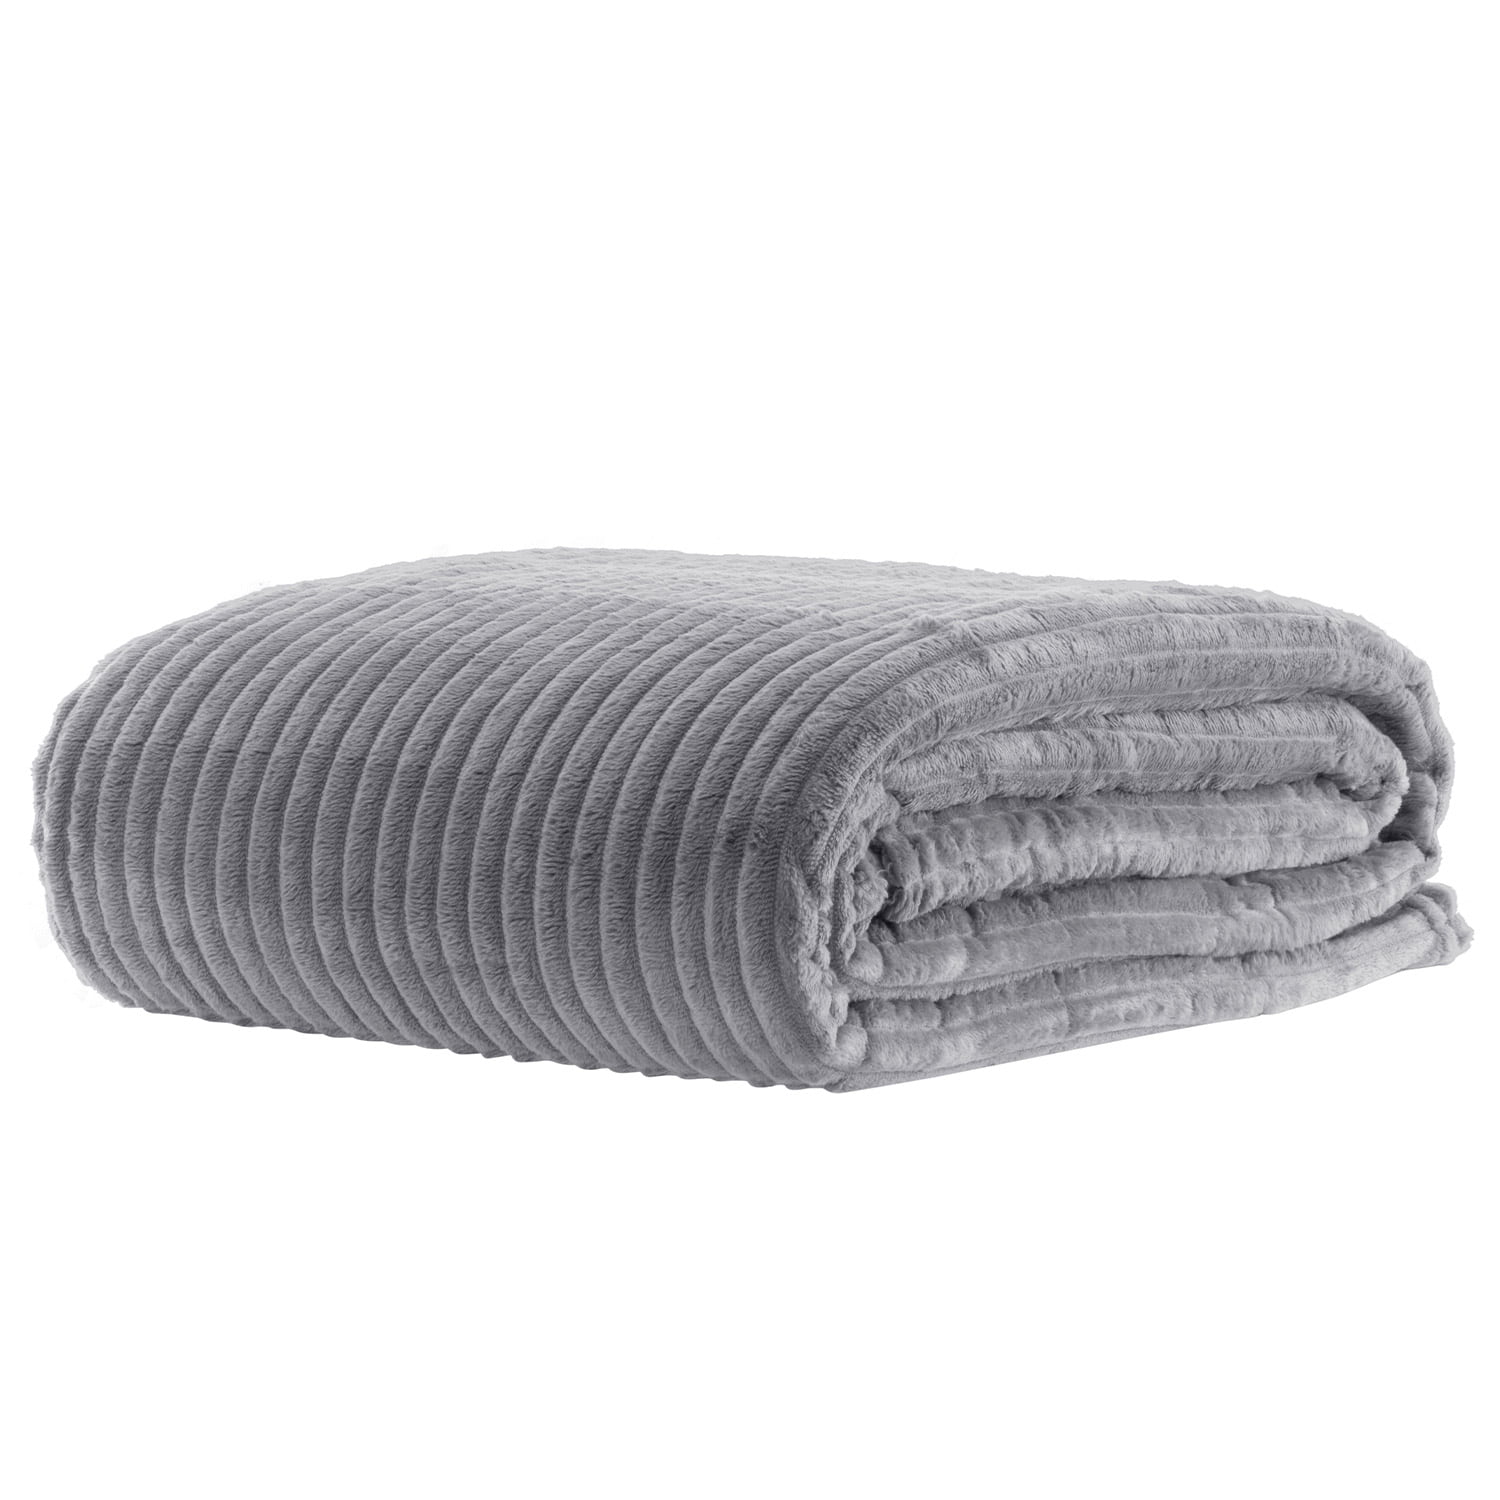 Manta Cobertor Casal Canelado Premium Londres Liso 180x220cm - Prata